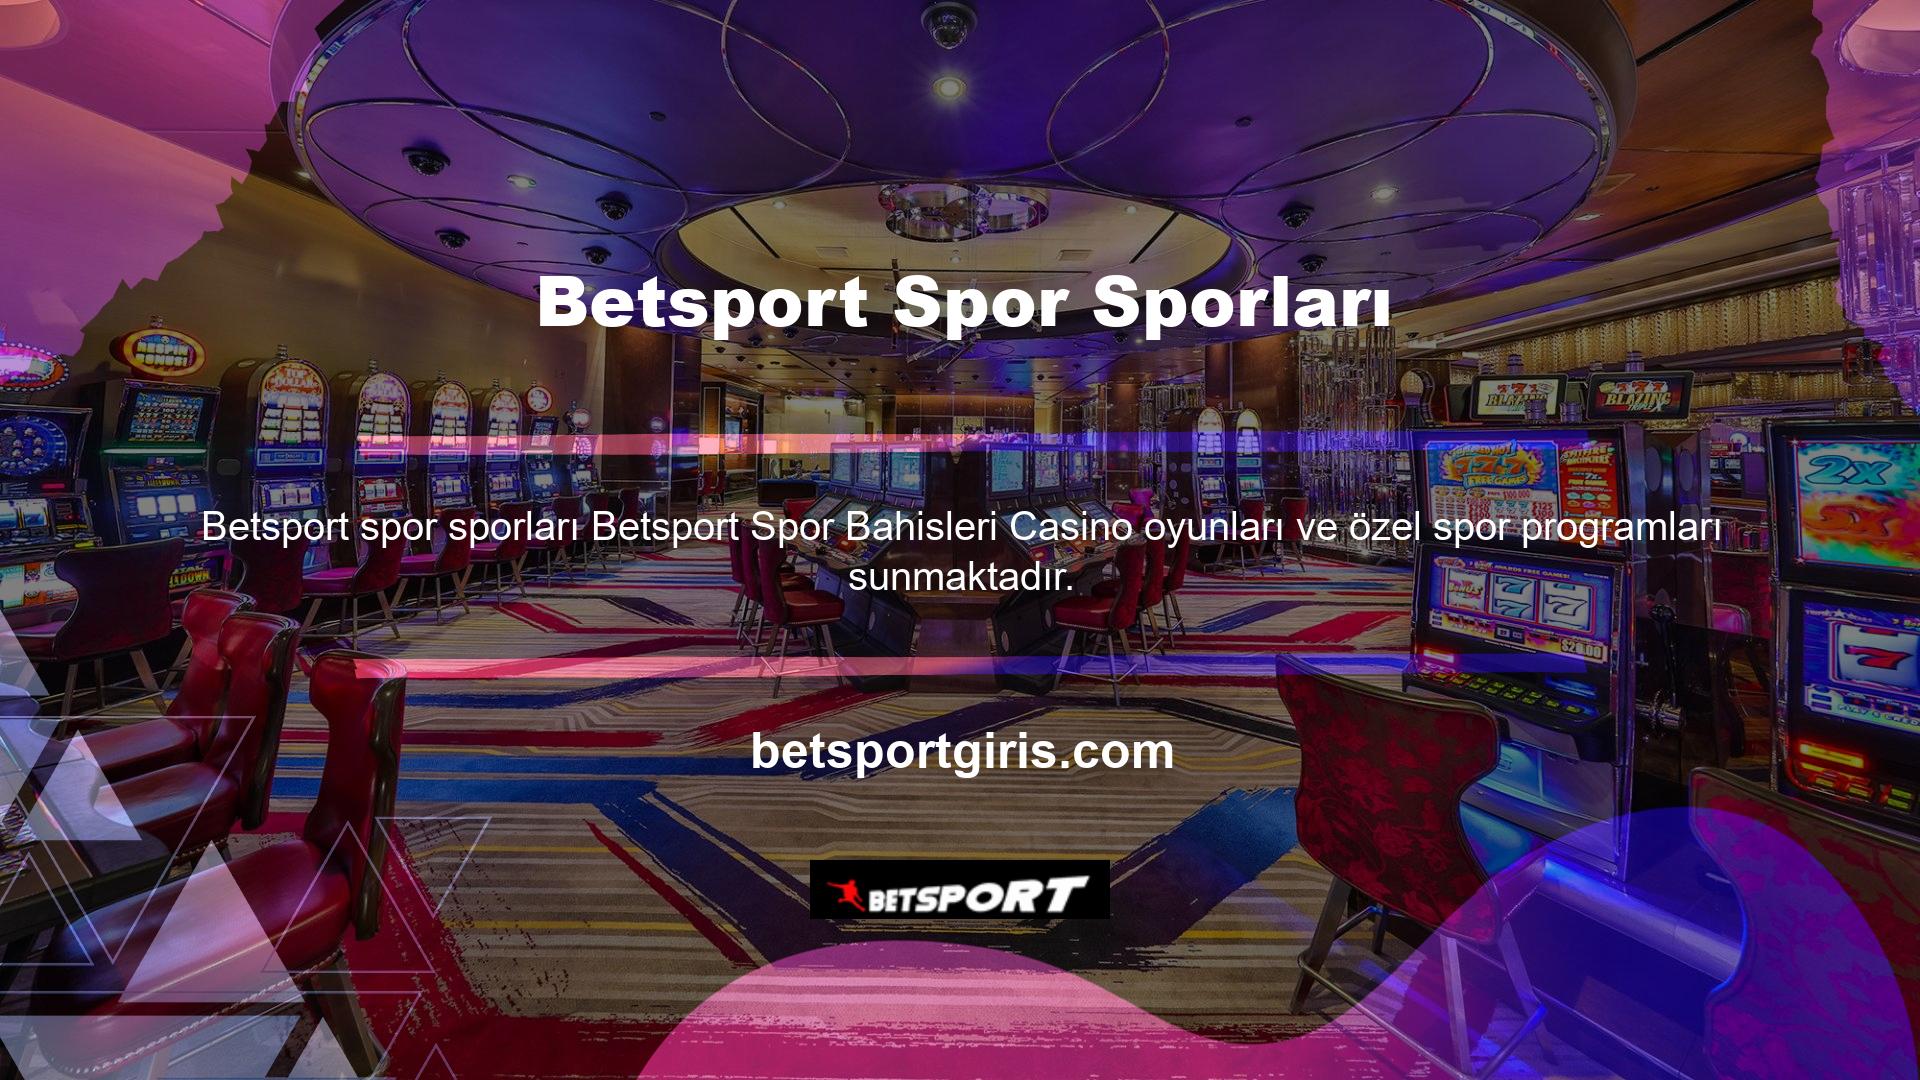 Sadece bir saat içinde bir spor karşılaşmasını kazanmanın eşsiz heyecanını yaşamak istiyorsanız Betsport spor ailesine katılın